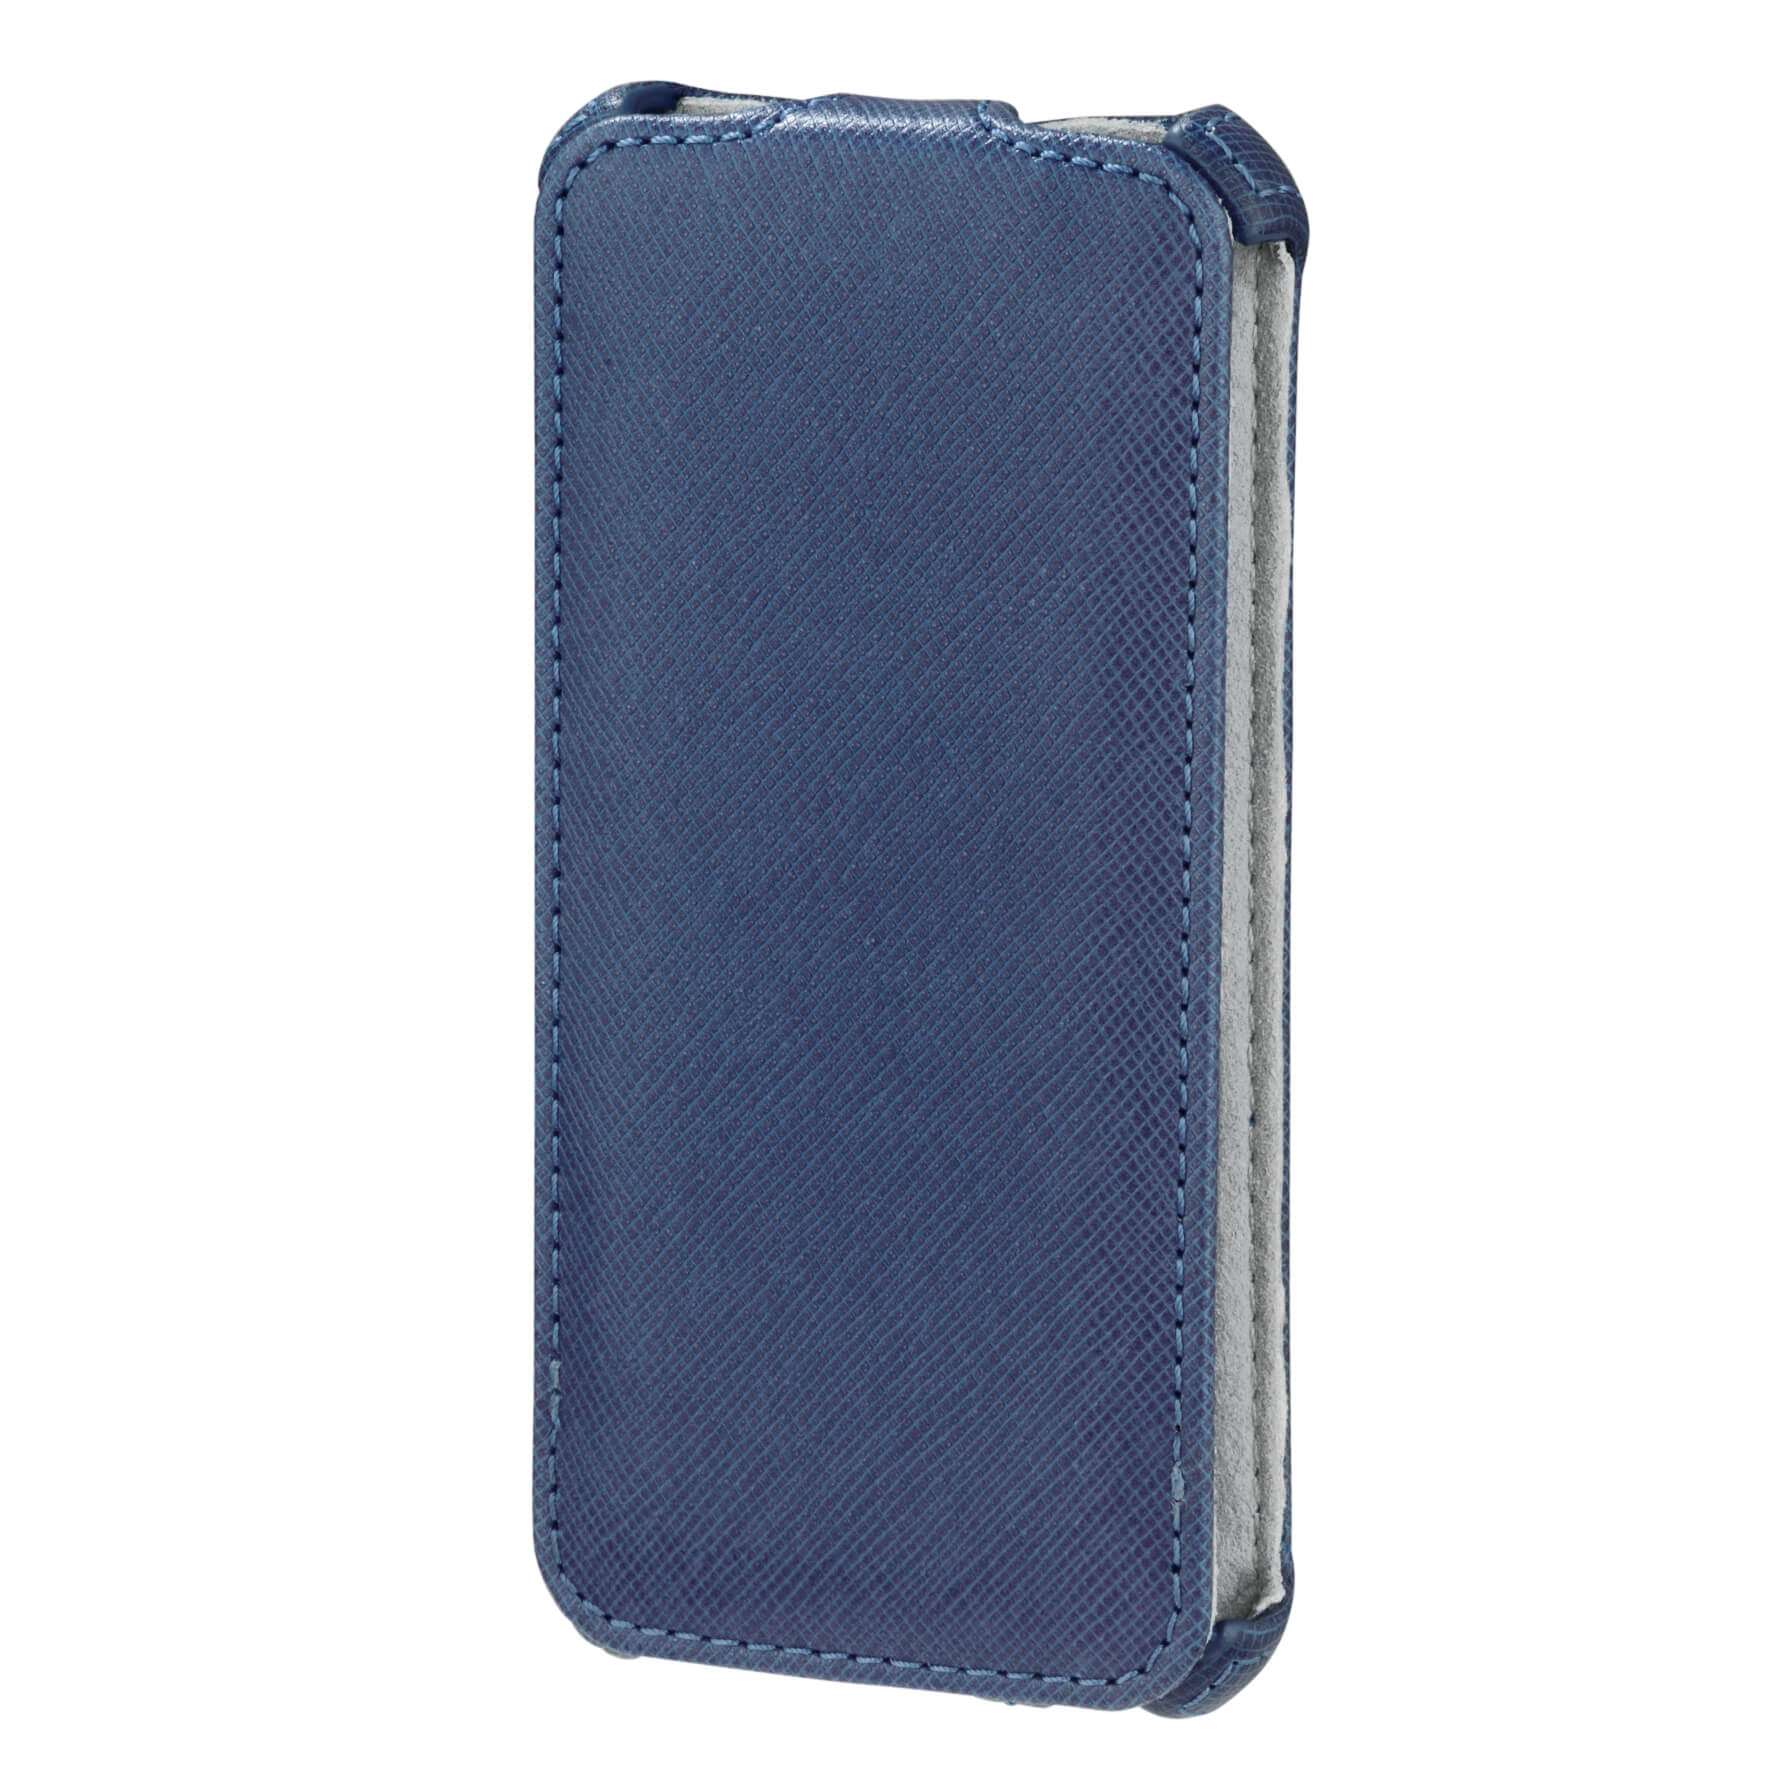 Flap Case Flap Case for Apple iPhone 5/5s/SE, blue